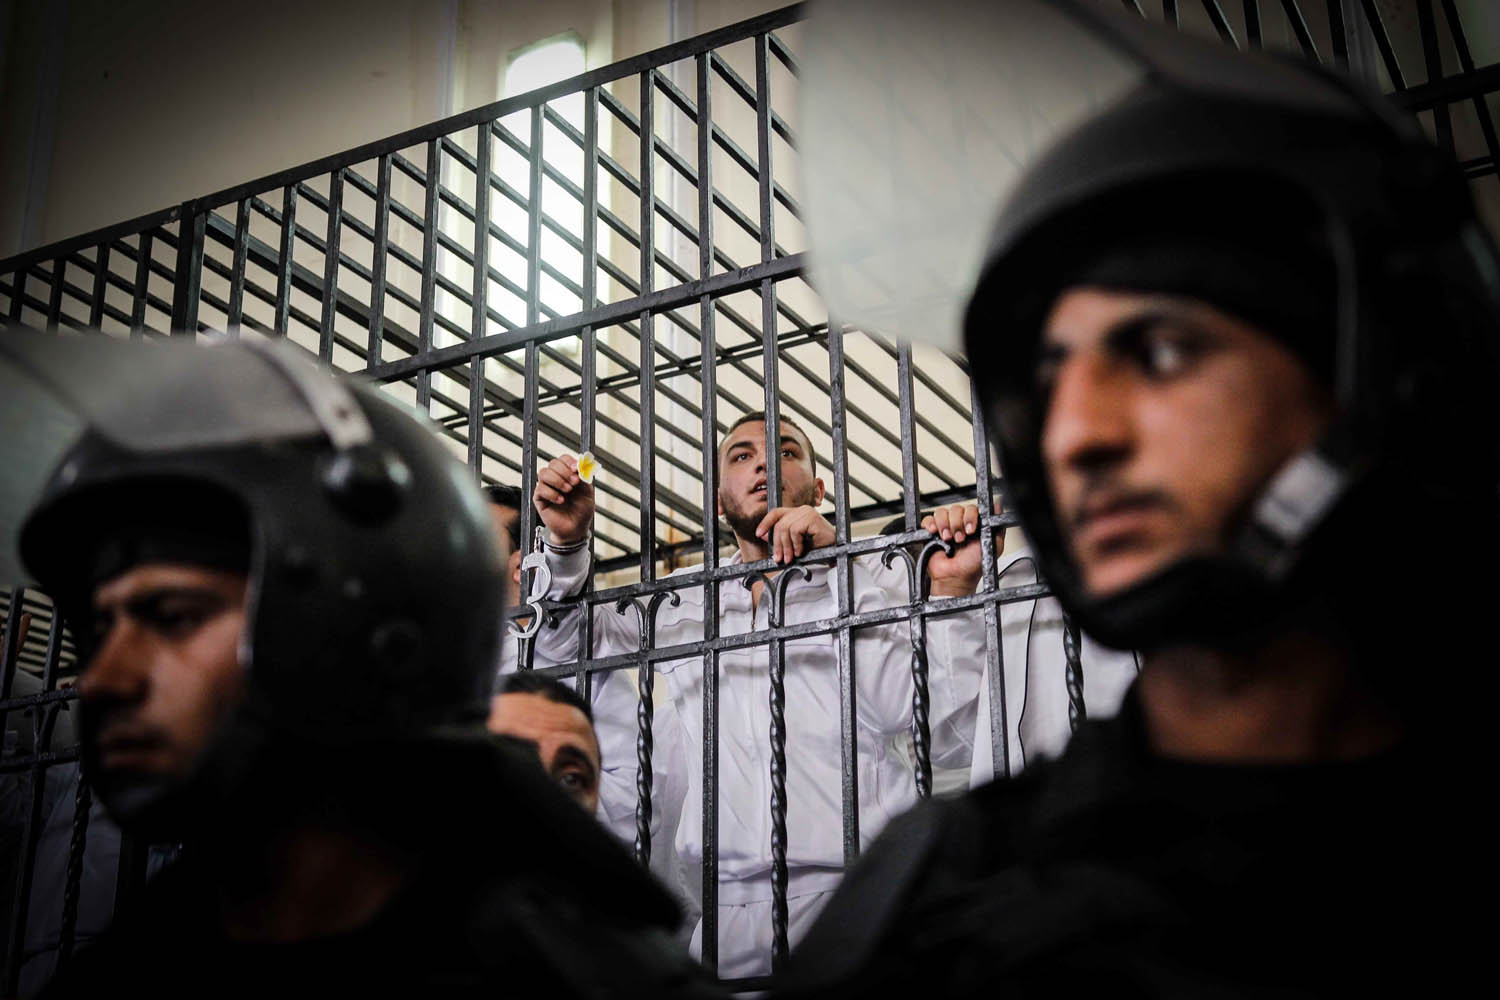 Egypt Islamic supporters of ousted president Mohamed Morsi